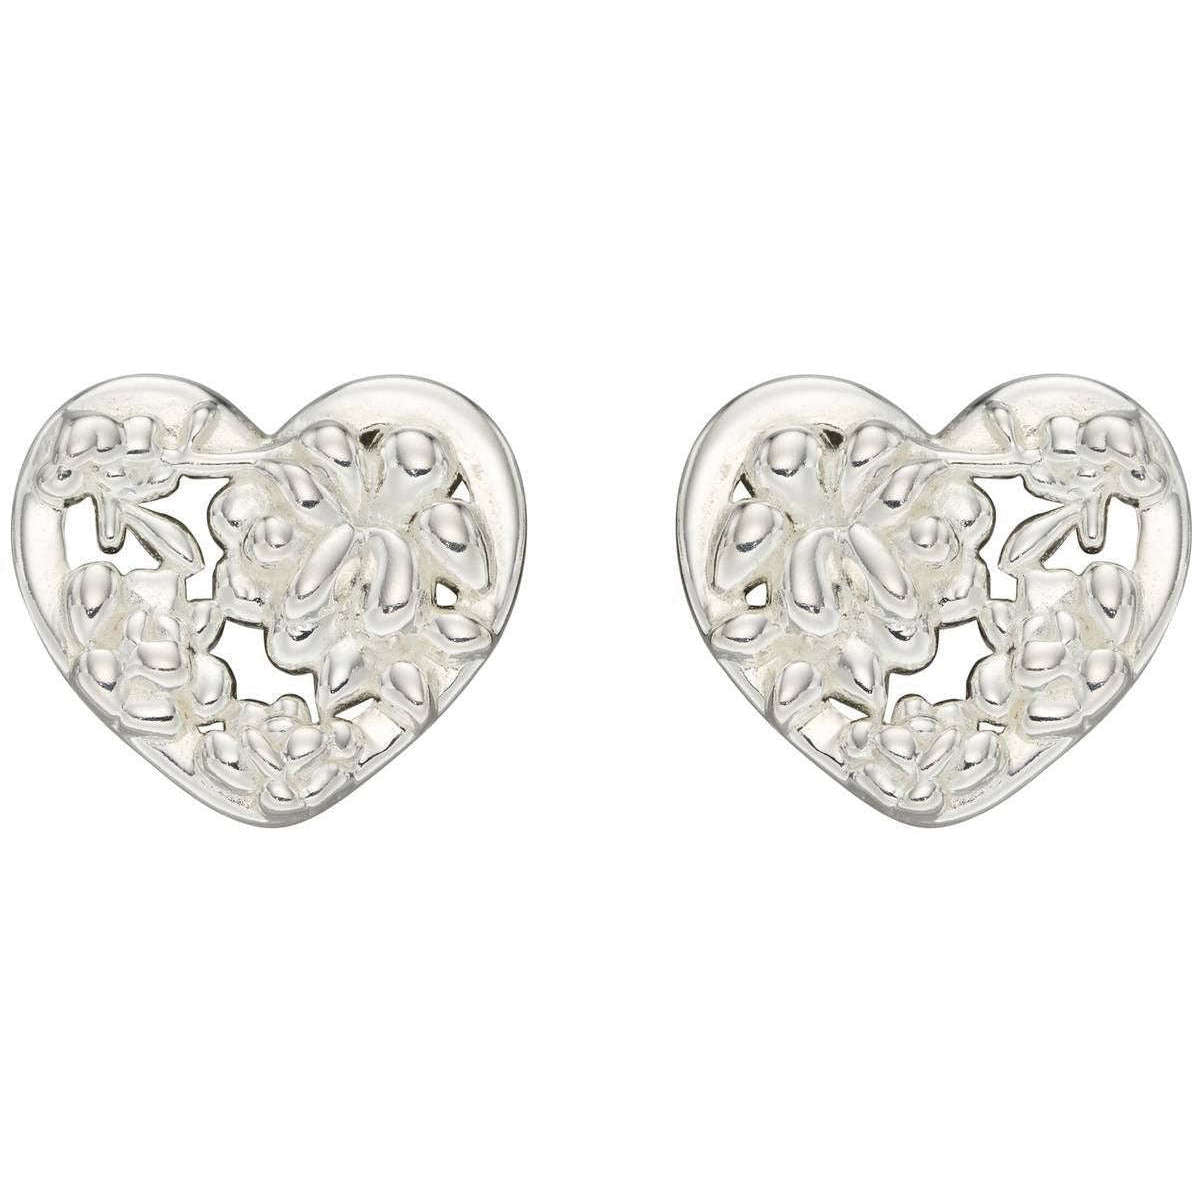 Elements Silver Ornate Heart Stud Earrings - Silver